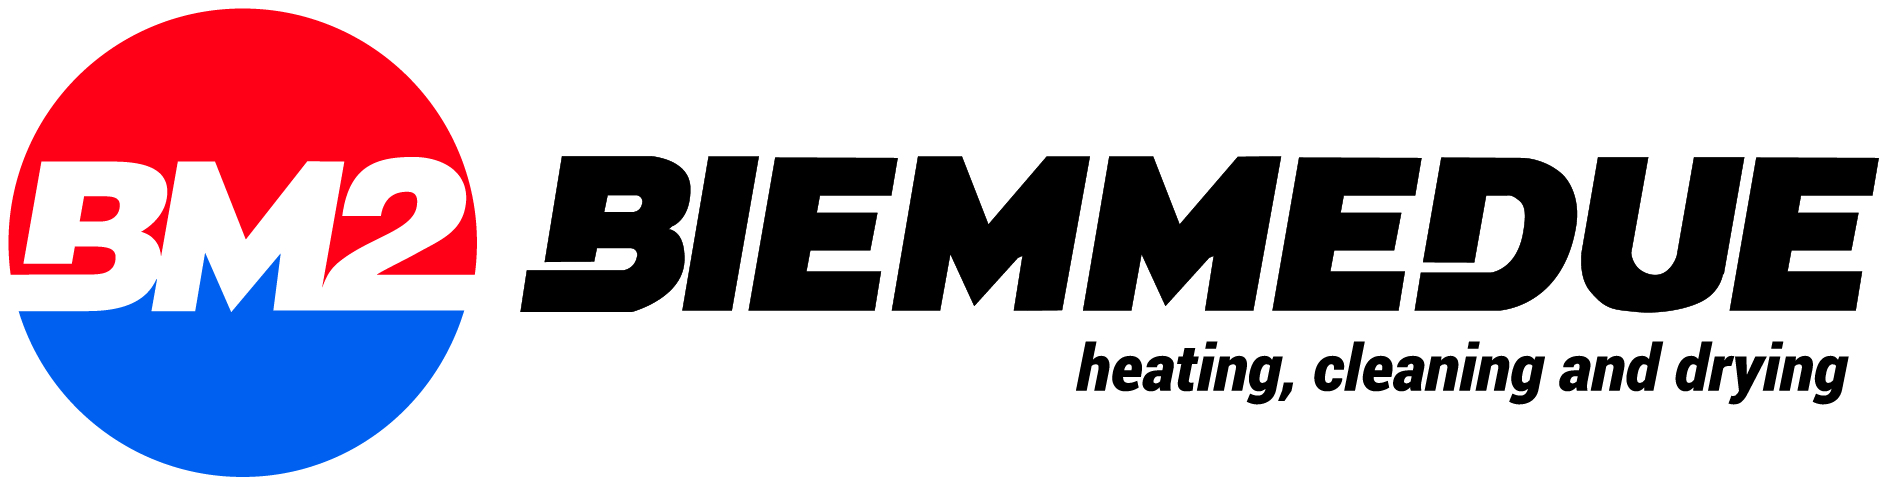 Biemmedue - BM2 - profesionálne ohrievače, odvlhčovače a čistiaca technika